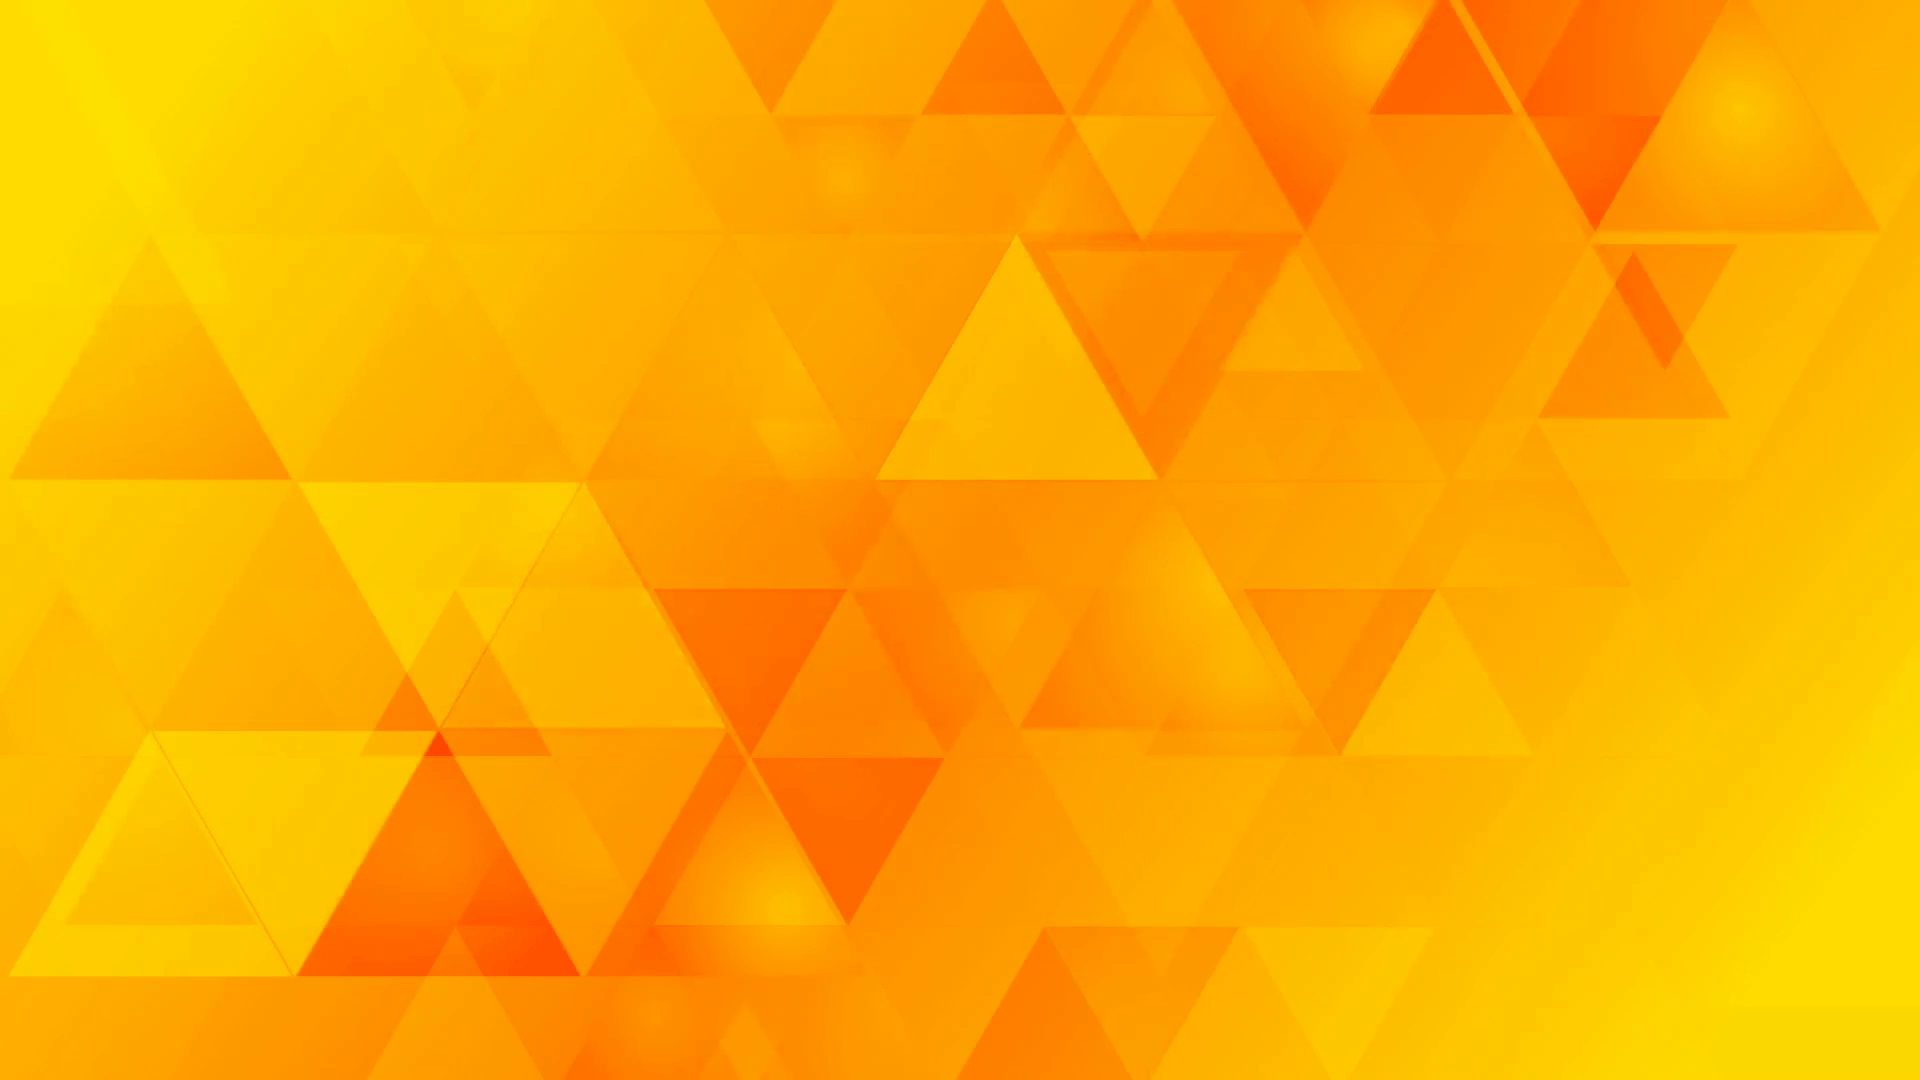 Hình nền vàng cam (Yellow orange wallpapers): Khám phá sắc màu tươi sáng của hình nền vàng cam. Sức hút của họa tiết này đến từ sự kết hợp tuyệt vời giữa màu vàng và cam. Nó sẽ mang lại một không gian làm việc hoặc màn hình chính thật sáng tạo và độc đáo. Translation: Explore the vibrant colors of yellow-orange wallpapers. The appeal of this pattern comes from the perfect combination of yellow and orange. It will create a truly creative and unique workspace or main screen.